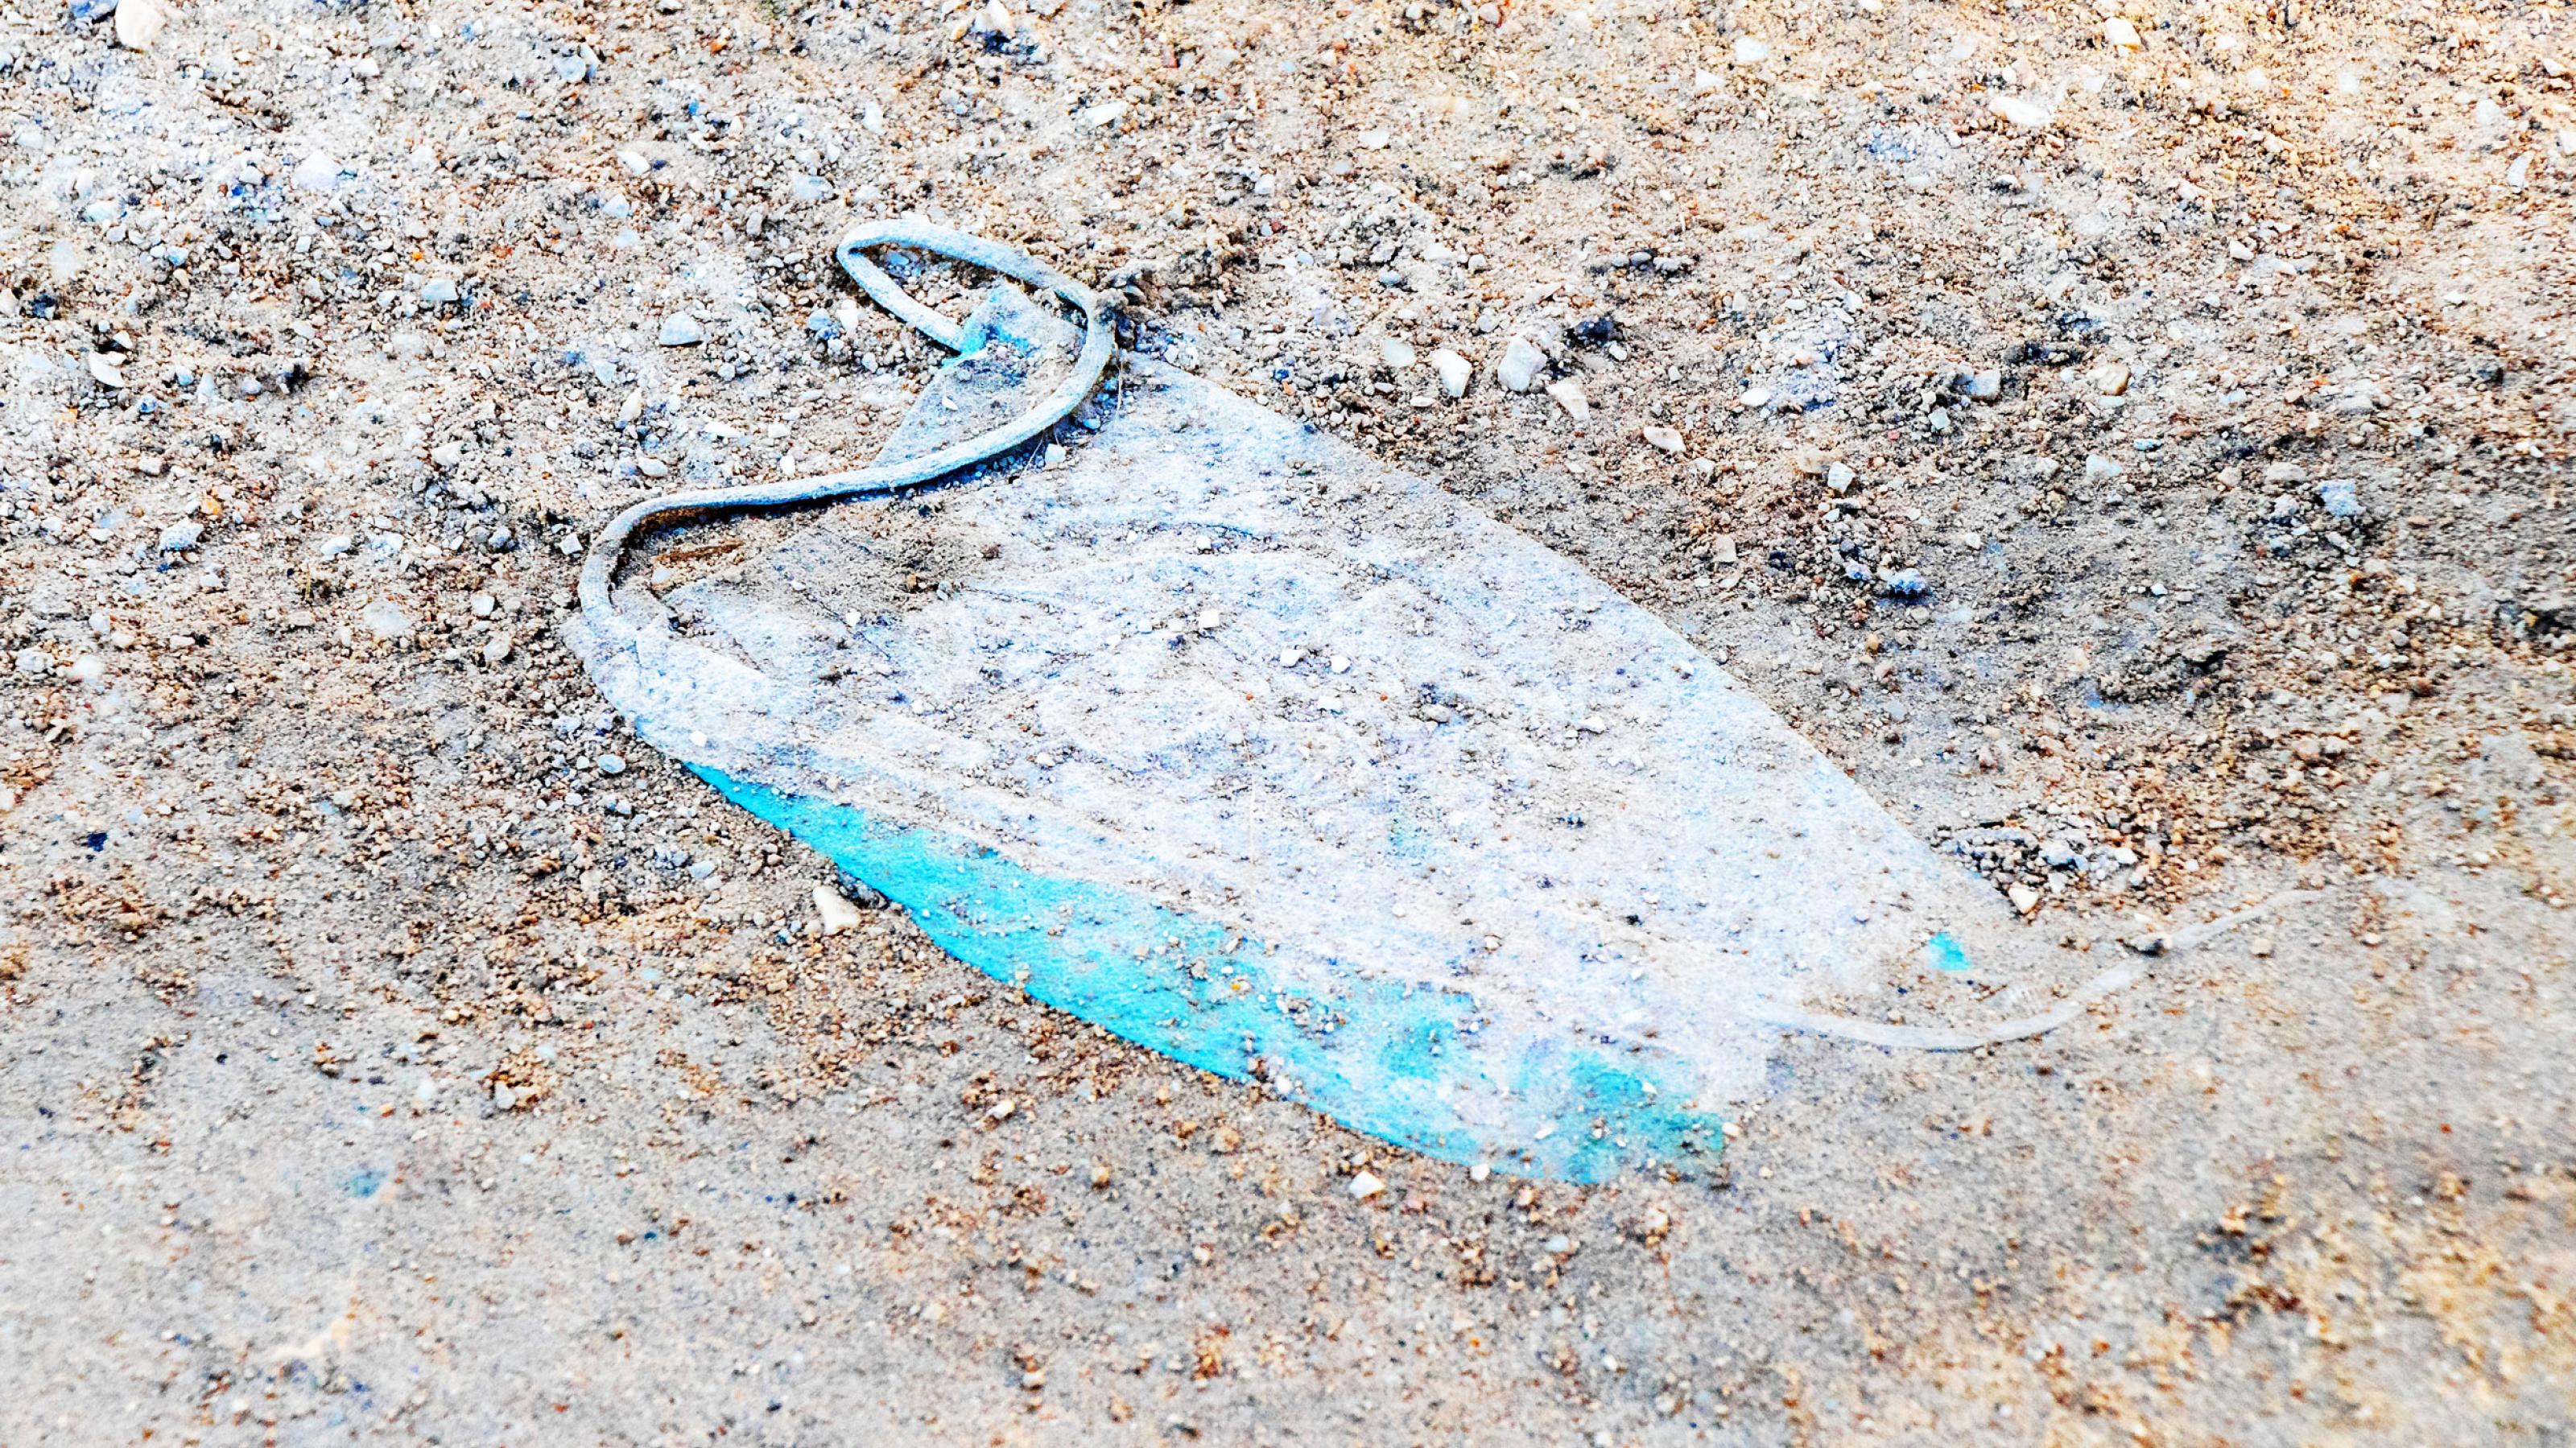 Eine gebrauchte medizinische Corona-Schutzmaske liegt auf einem Sandboden im Dreck.